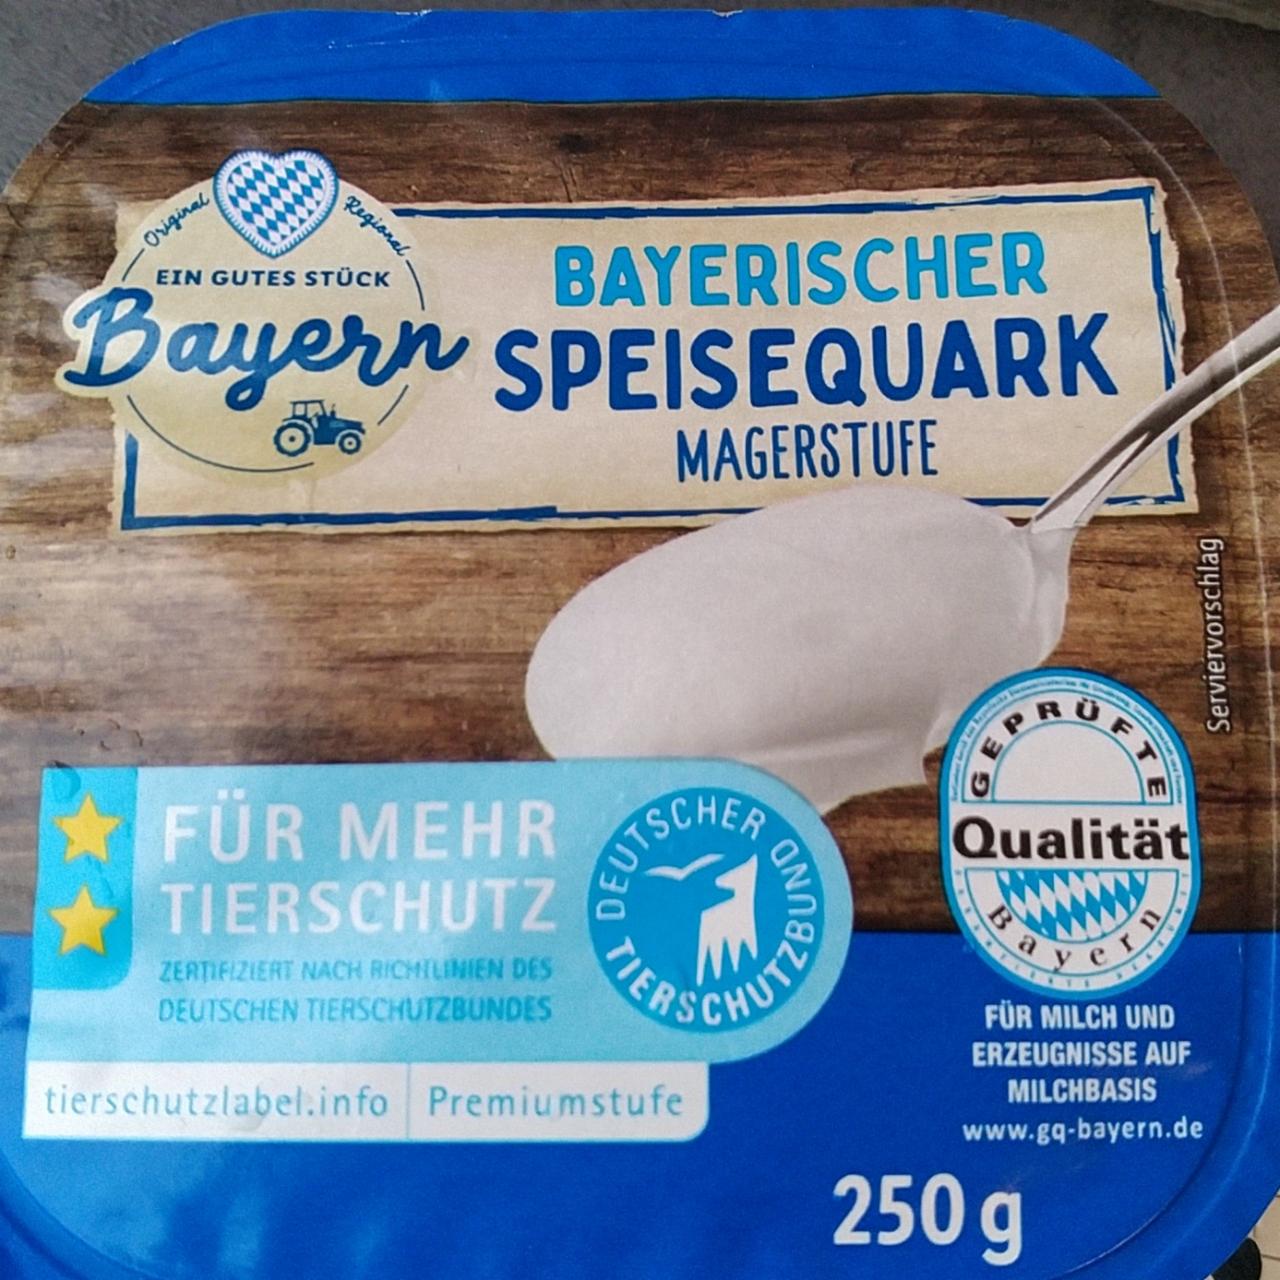 Фото - Bayerischer speisequark magerstufe Bayern